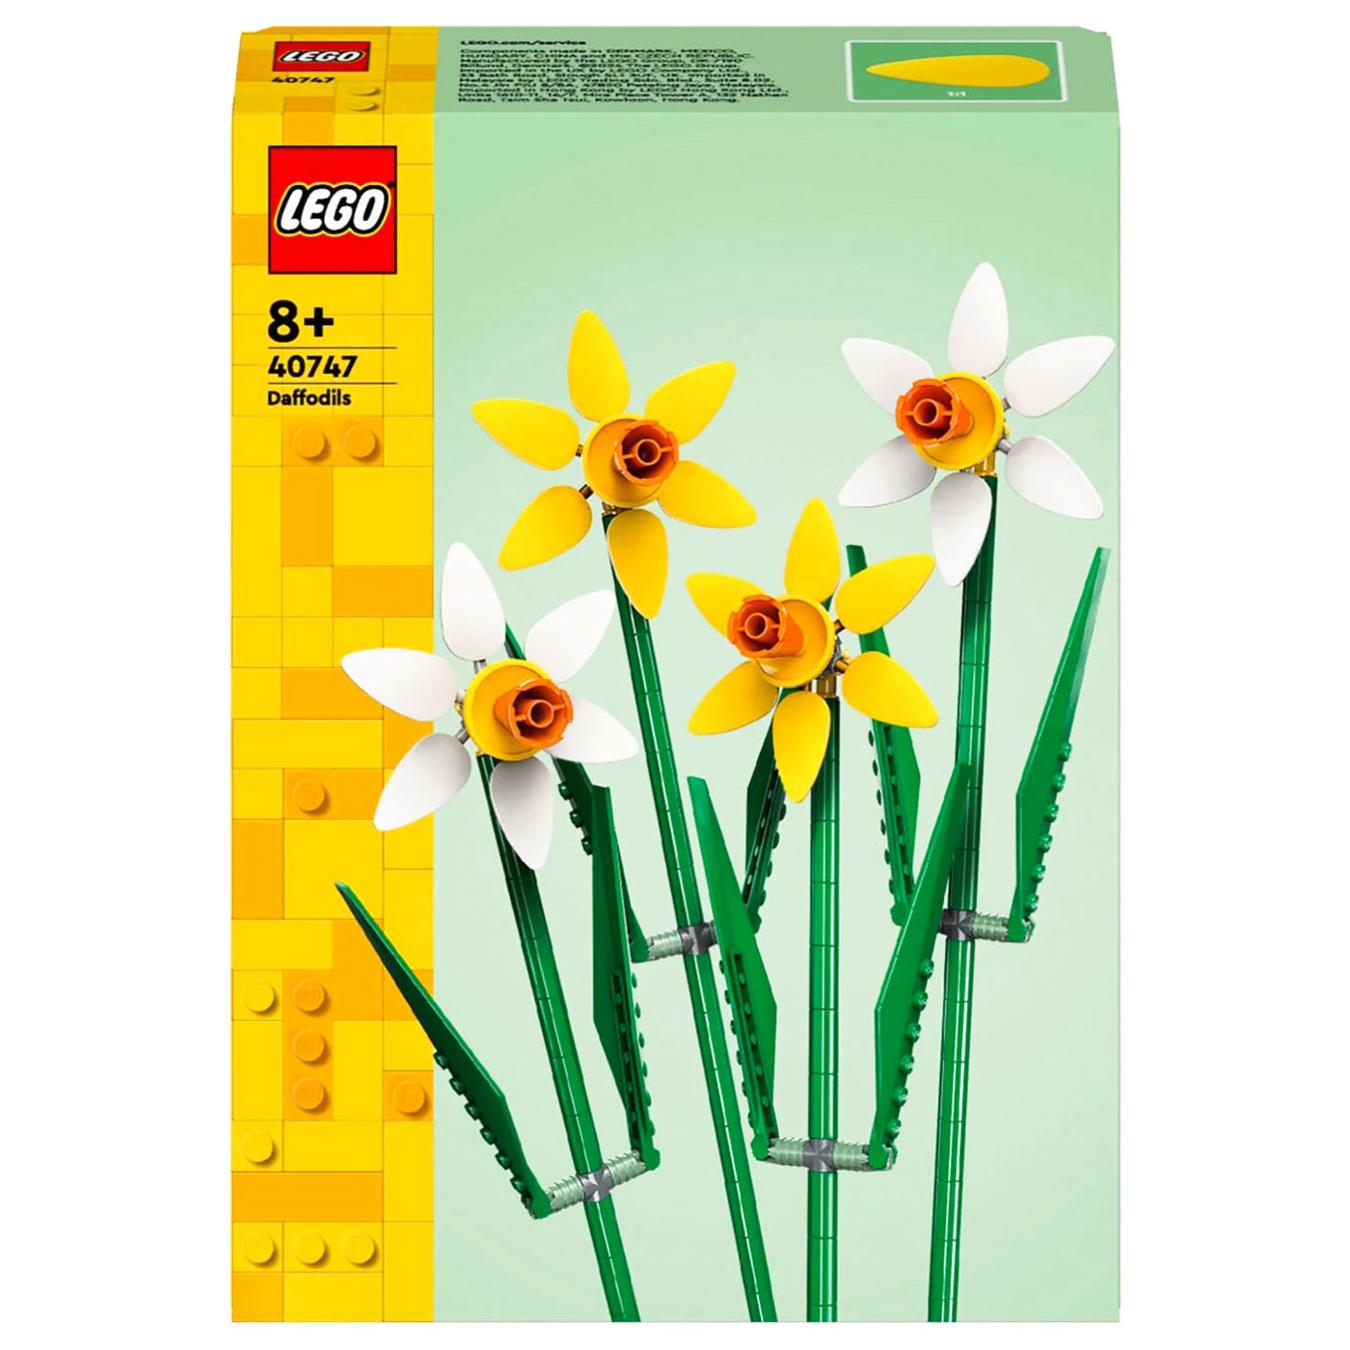 Constructor LEGO 40747 Daffodils